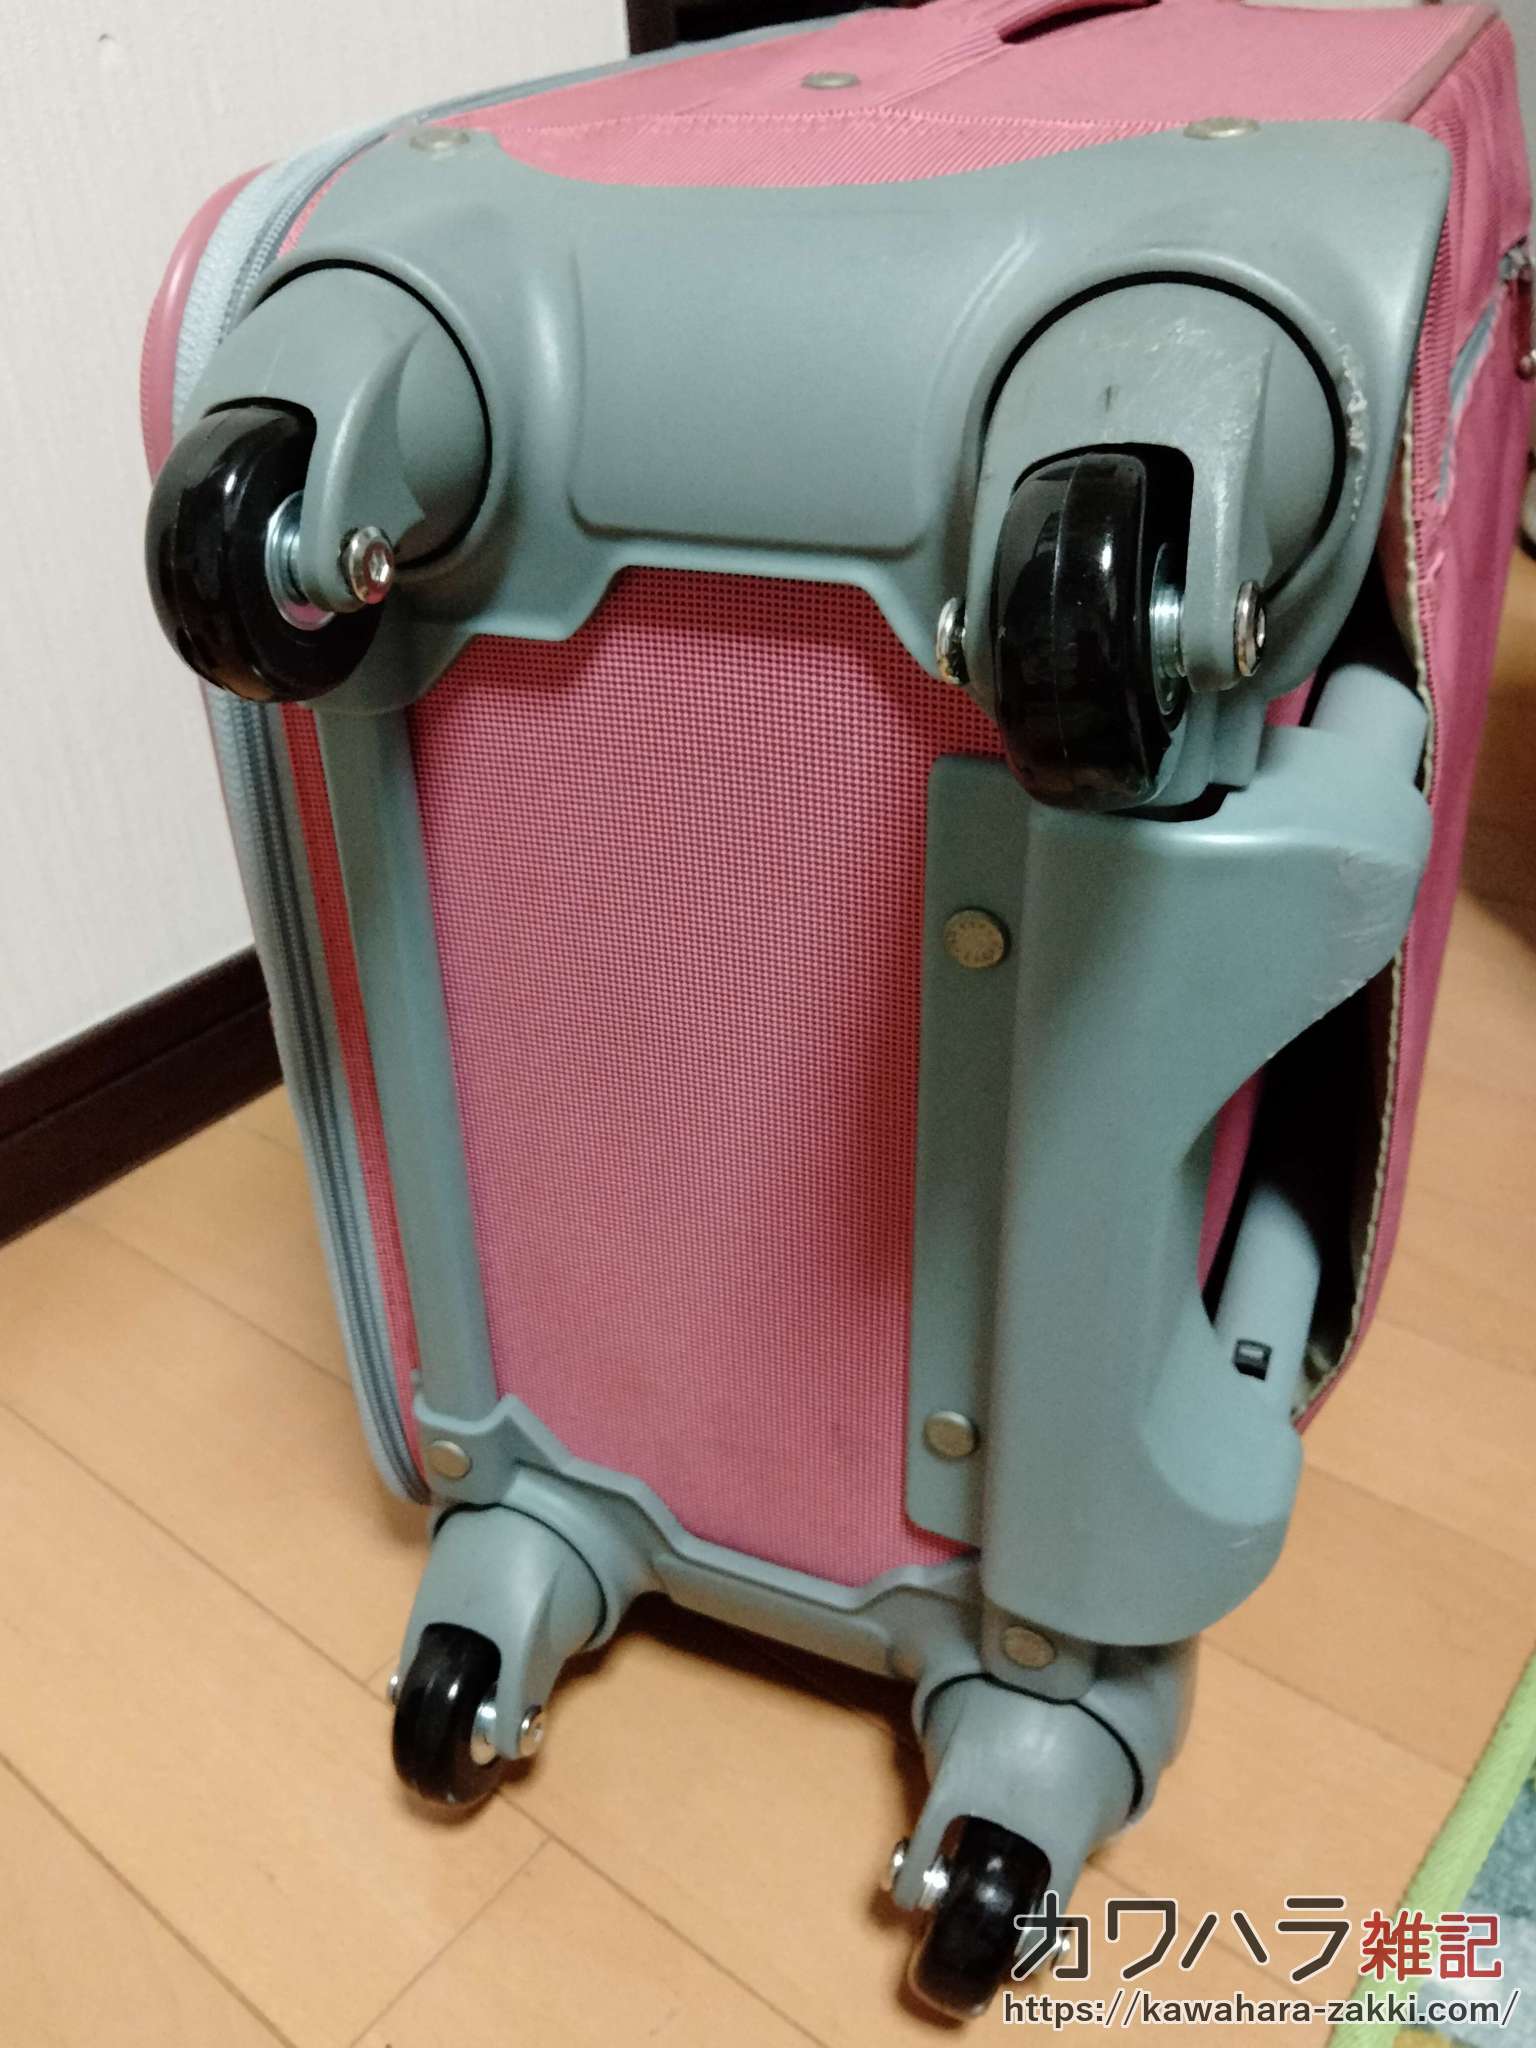 ぼろぼろになったスーツケースの車輪を修理する方法 | カワハラ雑記